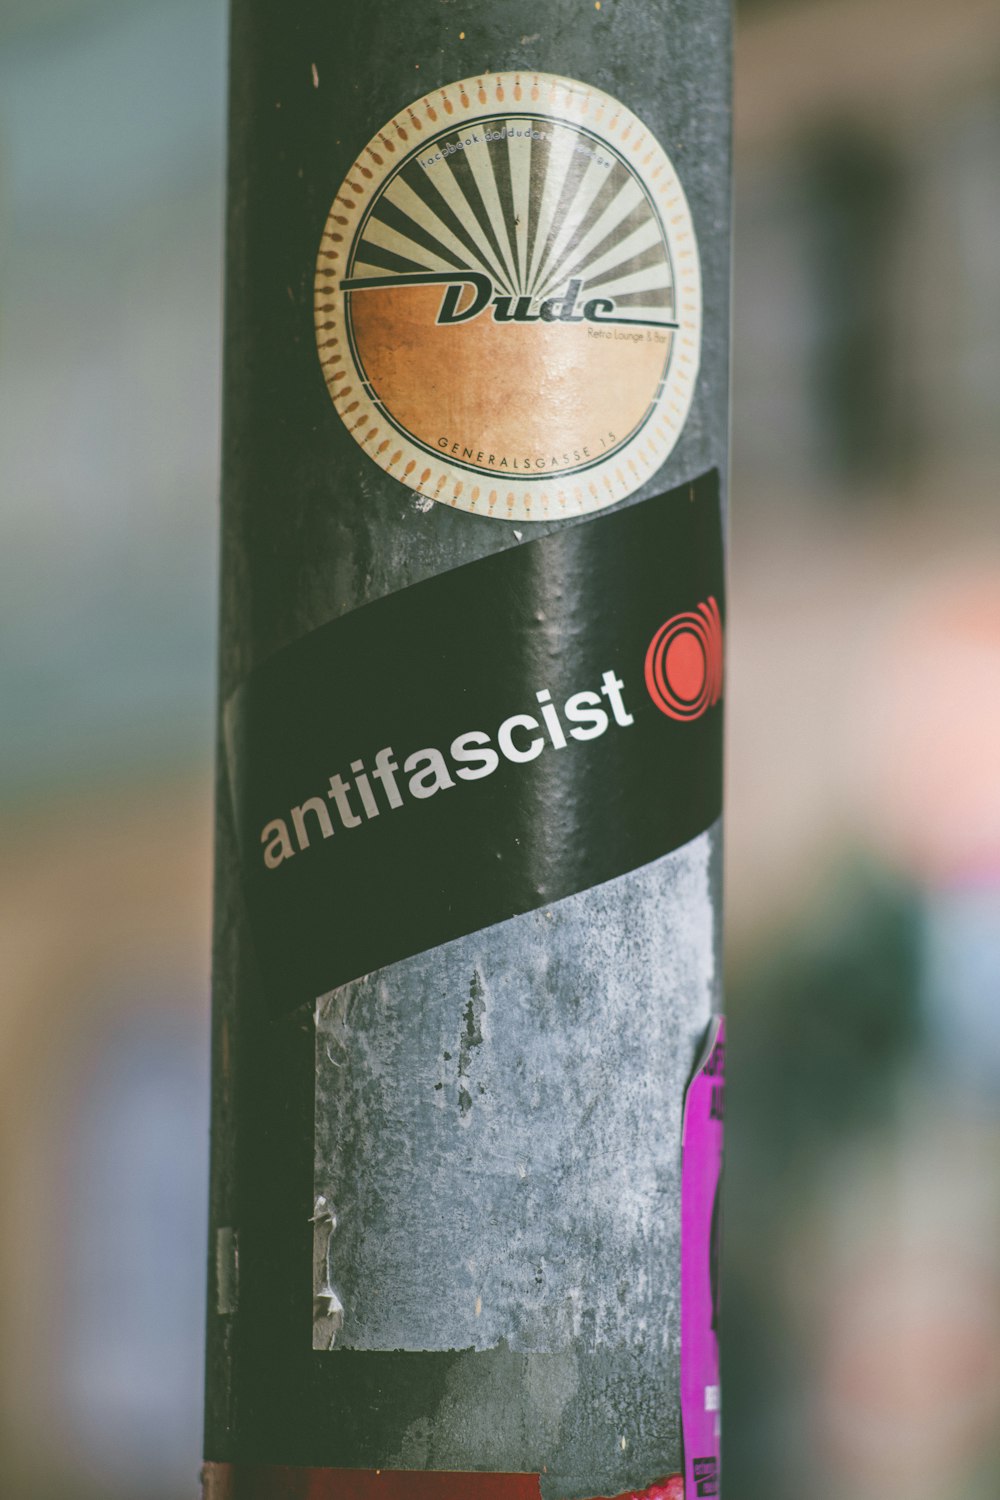 Dude Antifascist sticker